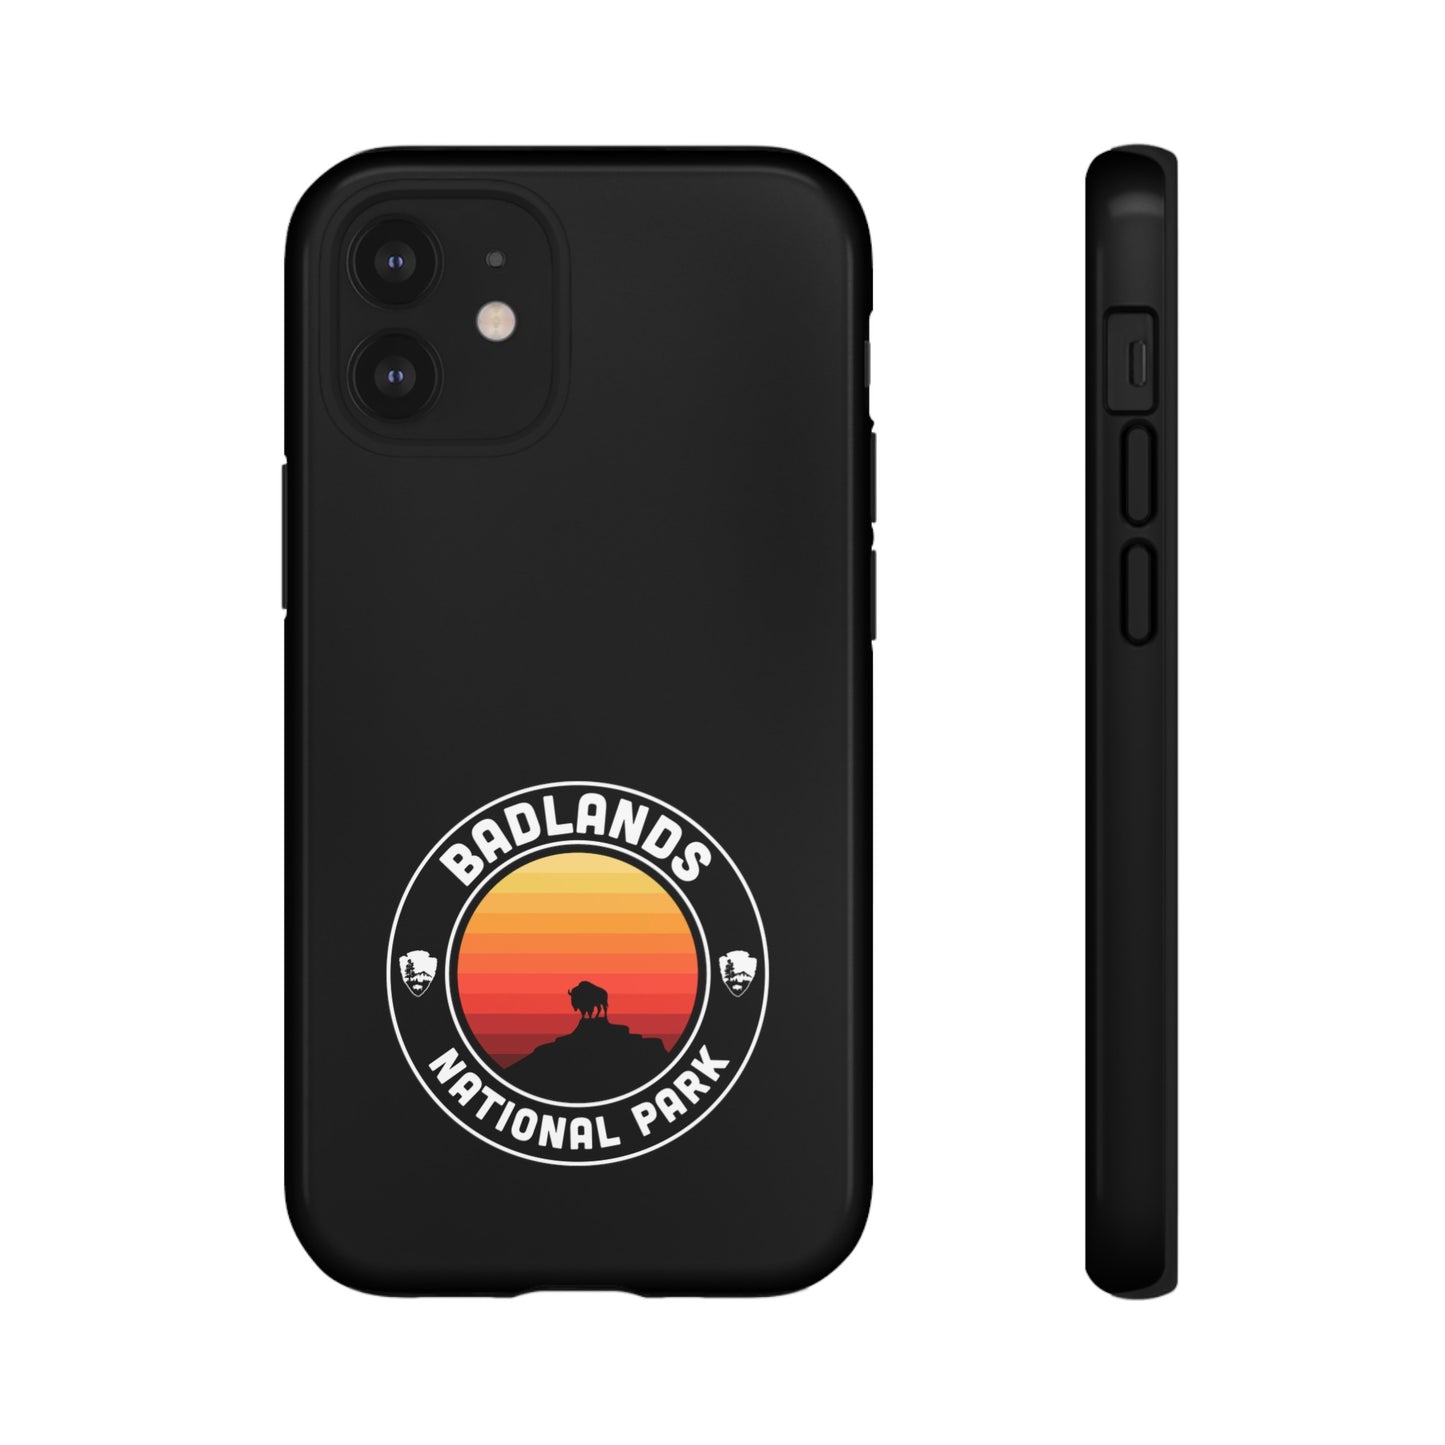 Badlands National Park Phone Case - Round Emblem Design